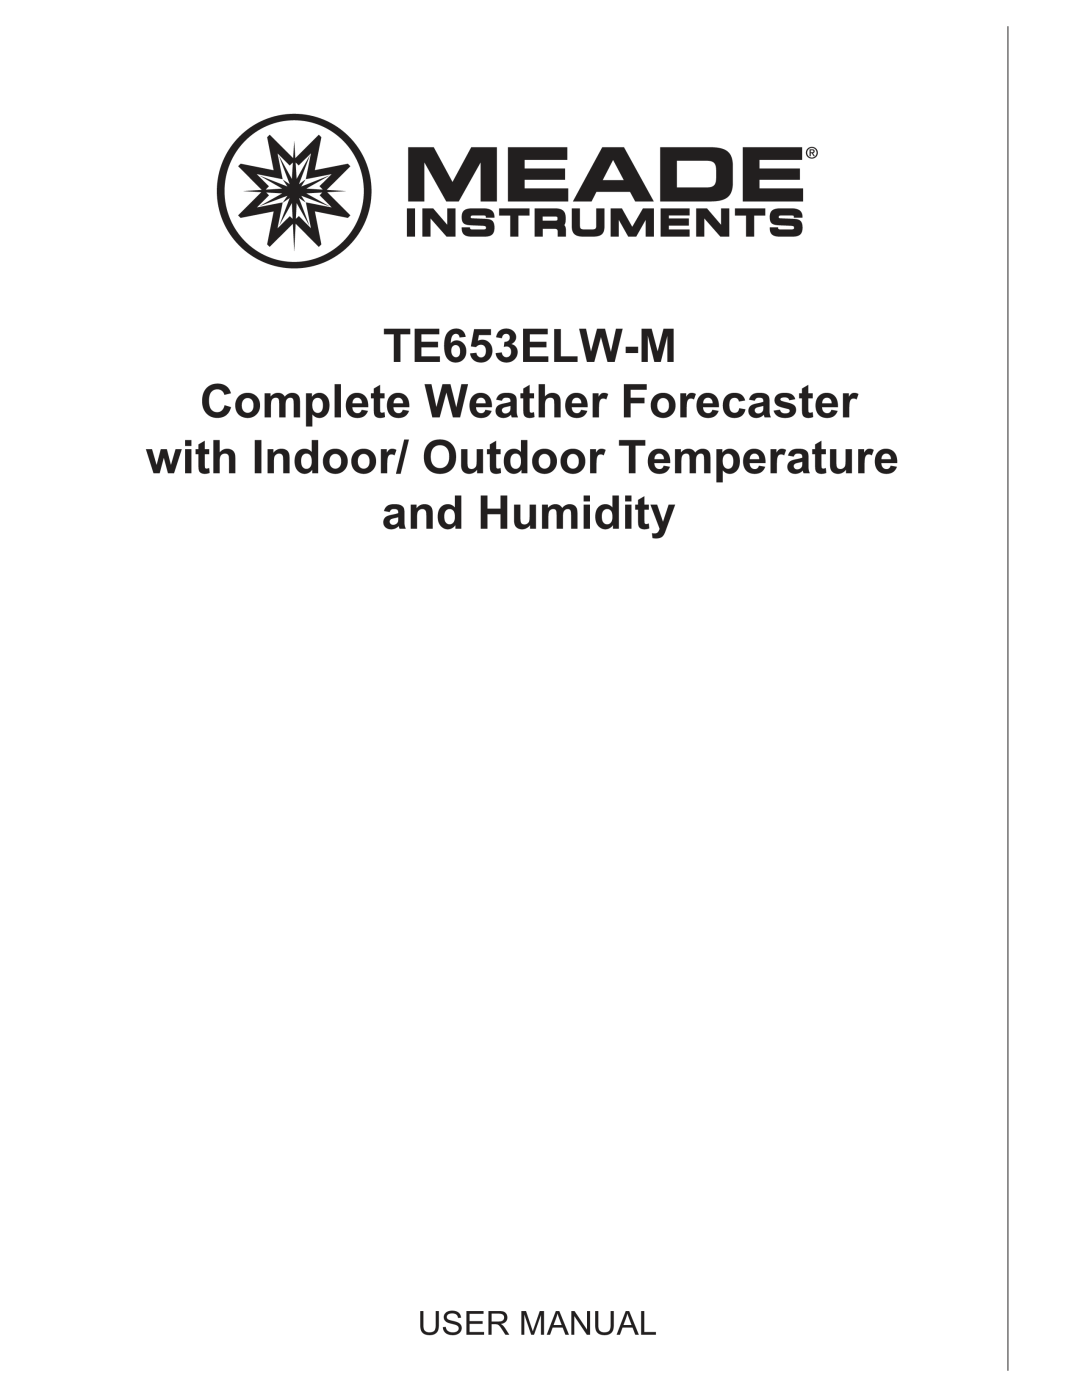 Meade TE653ELW-M user manual User Manual 